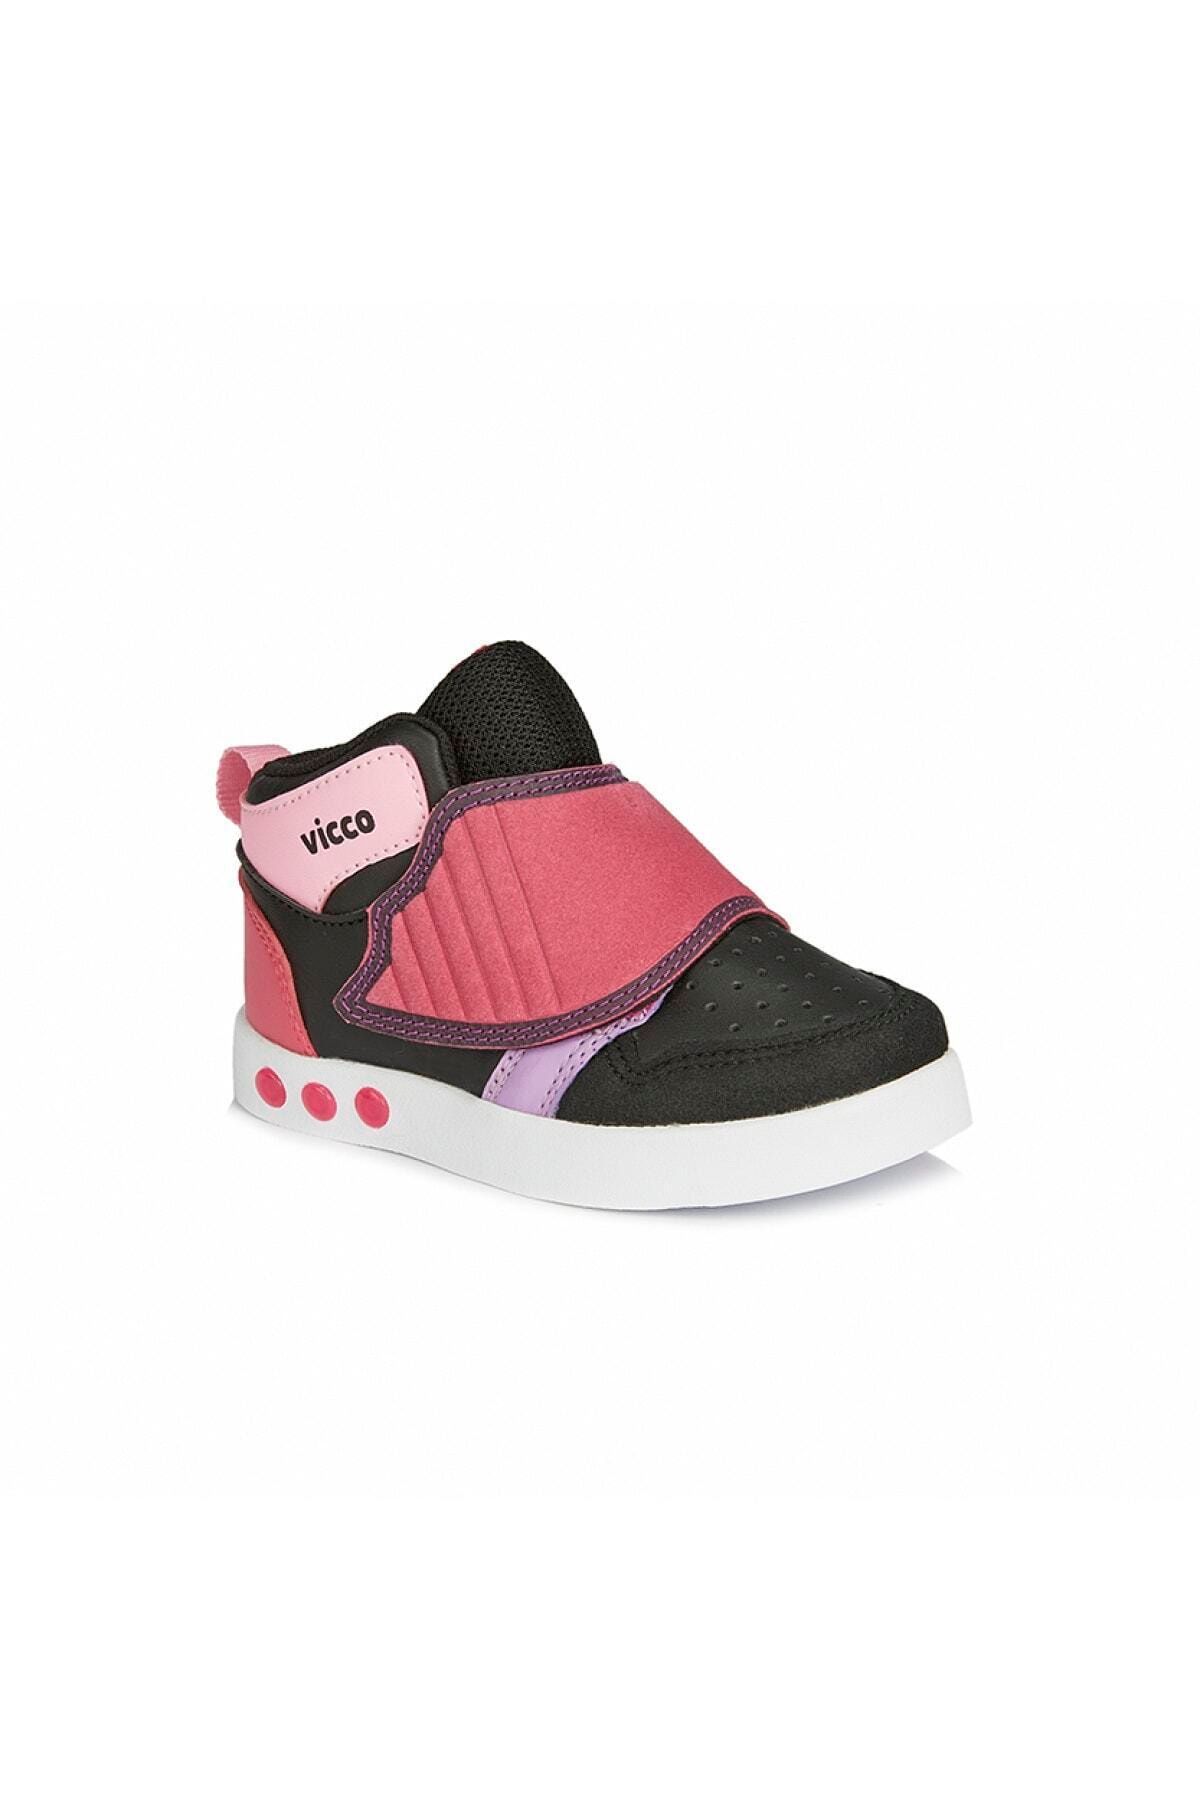 Vicco Kız Çocuk Siyah Sneaker Ayakkabı